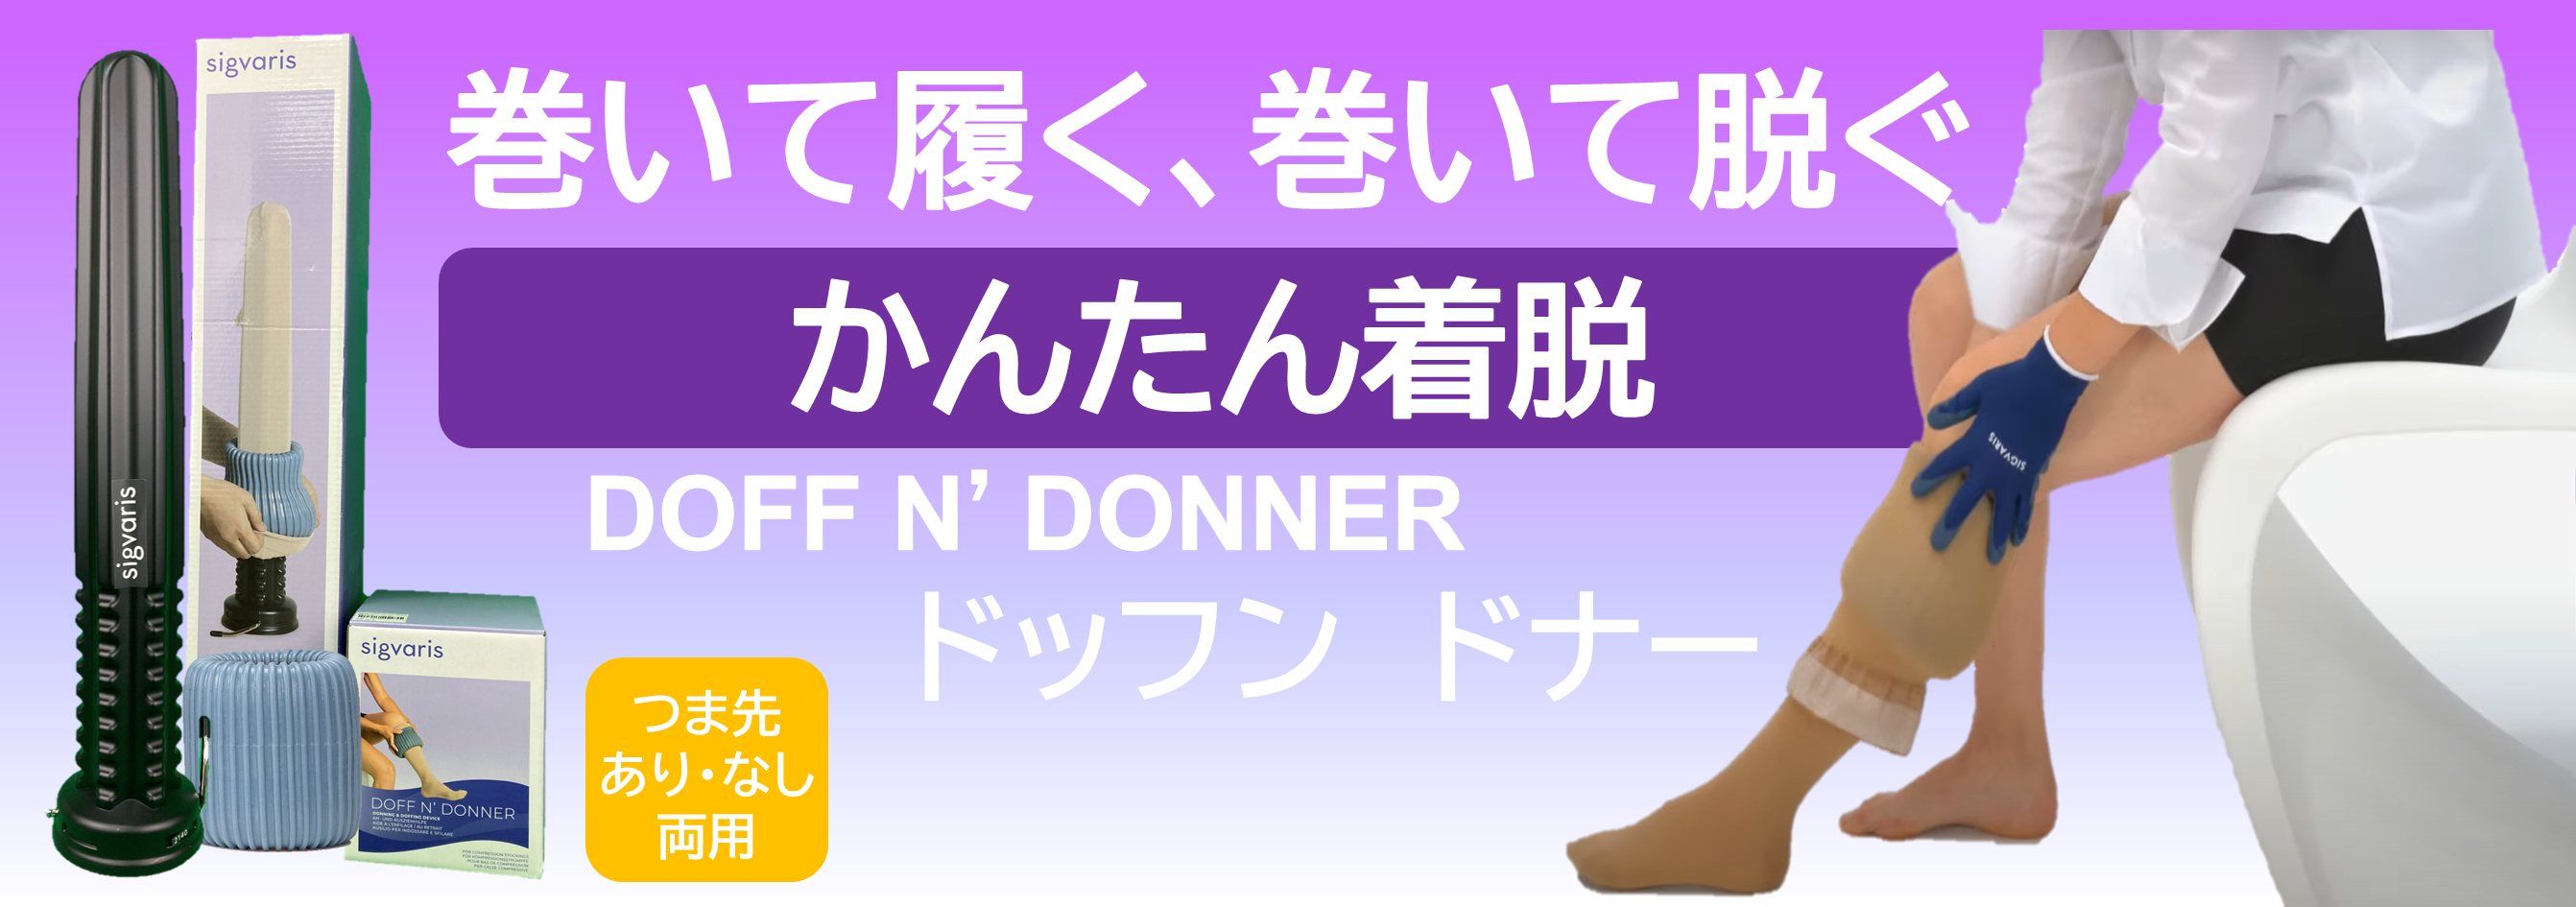 Doff N' Donner